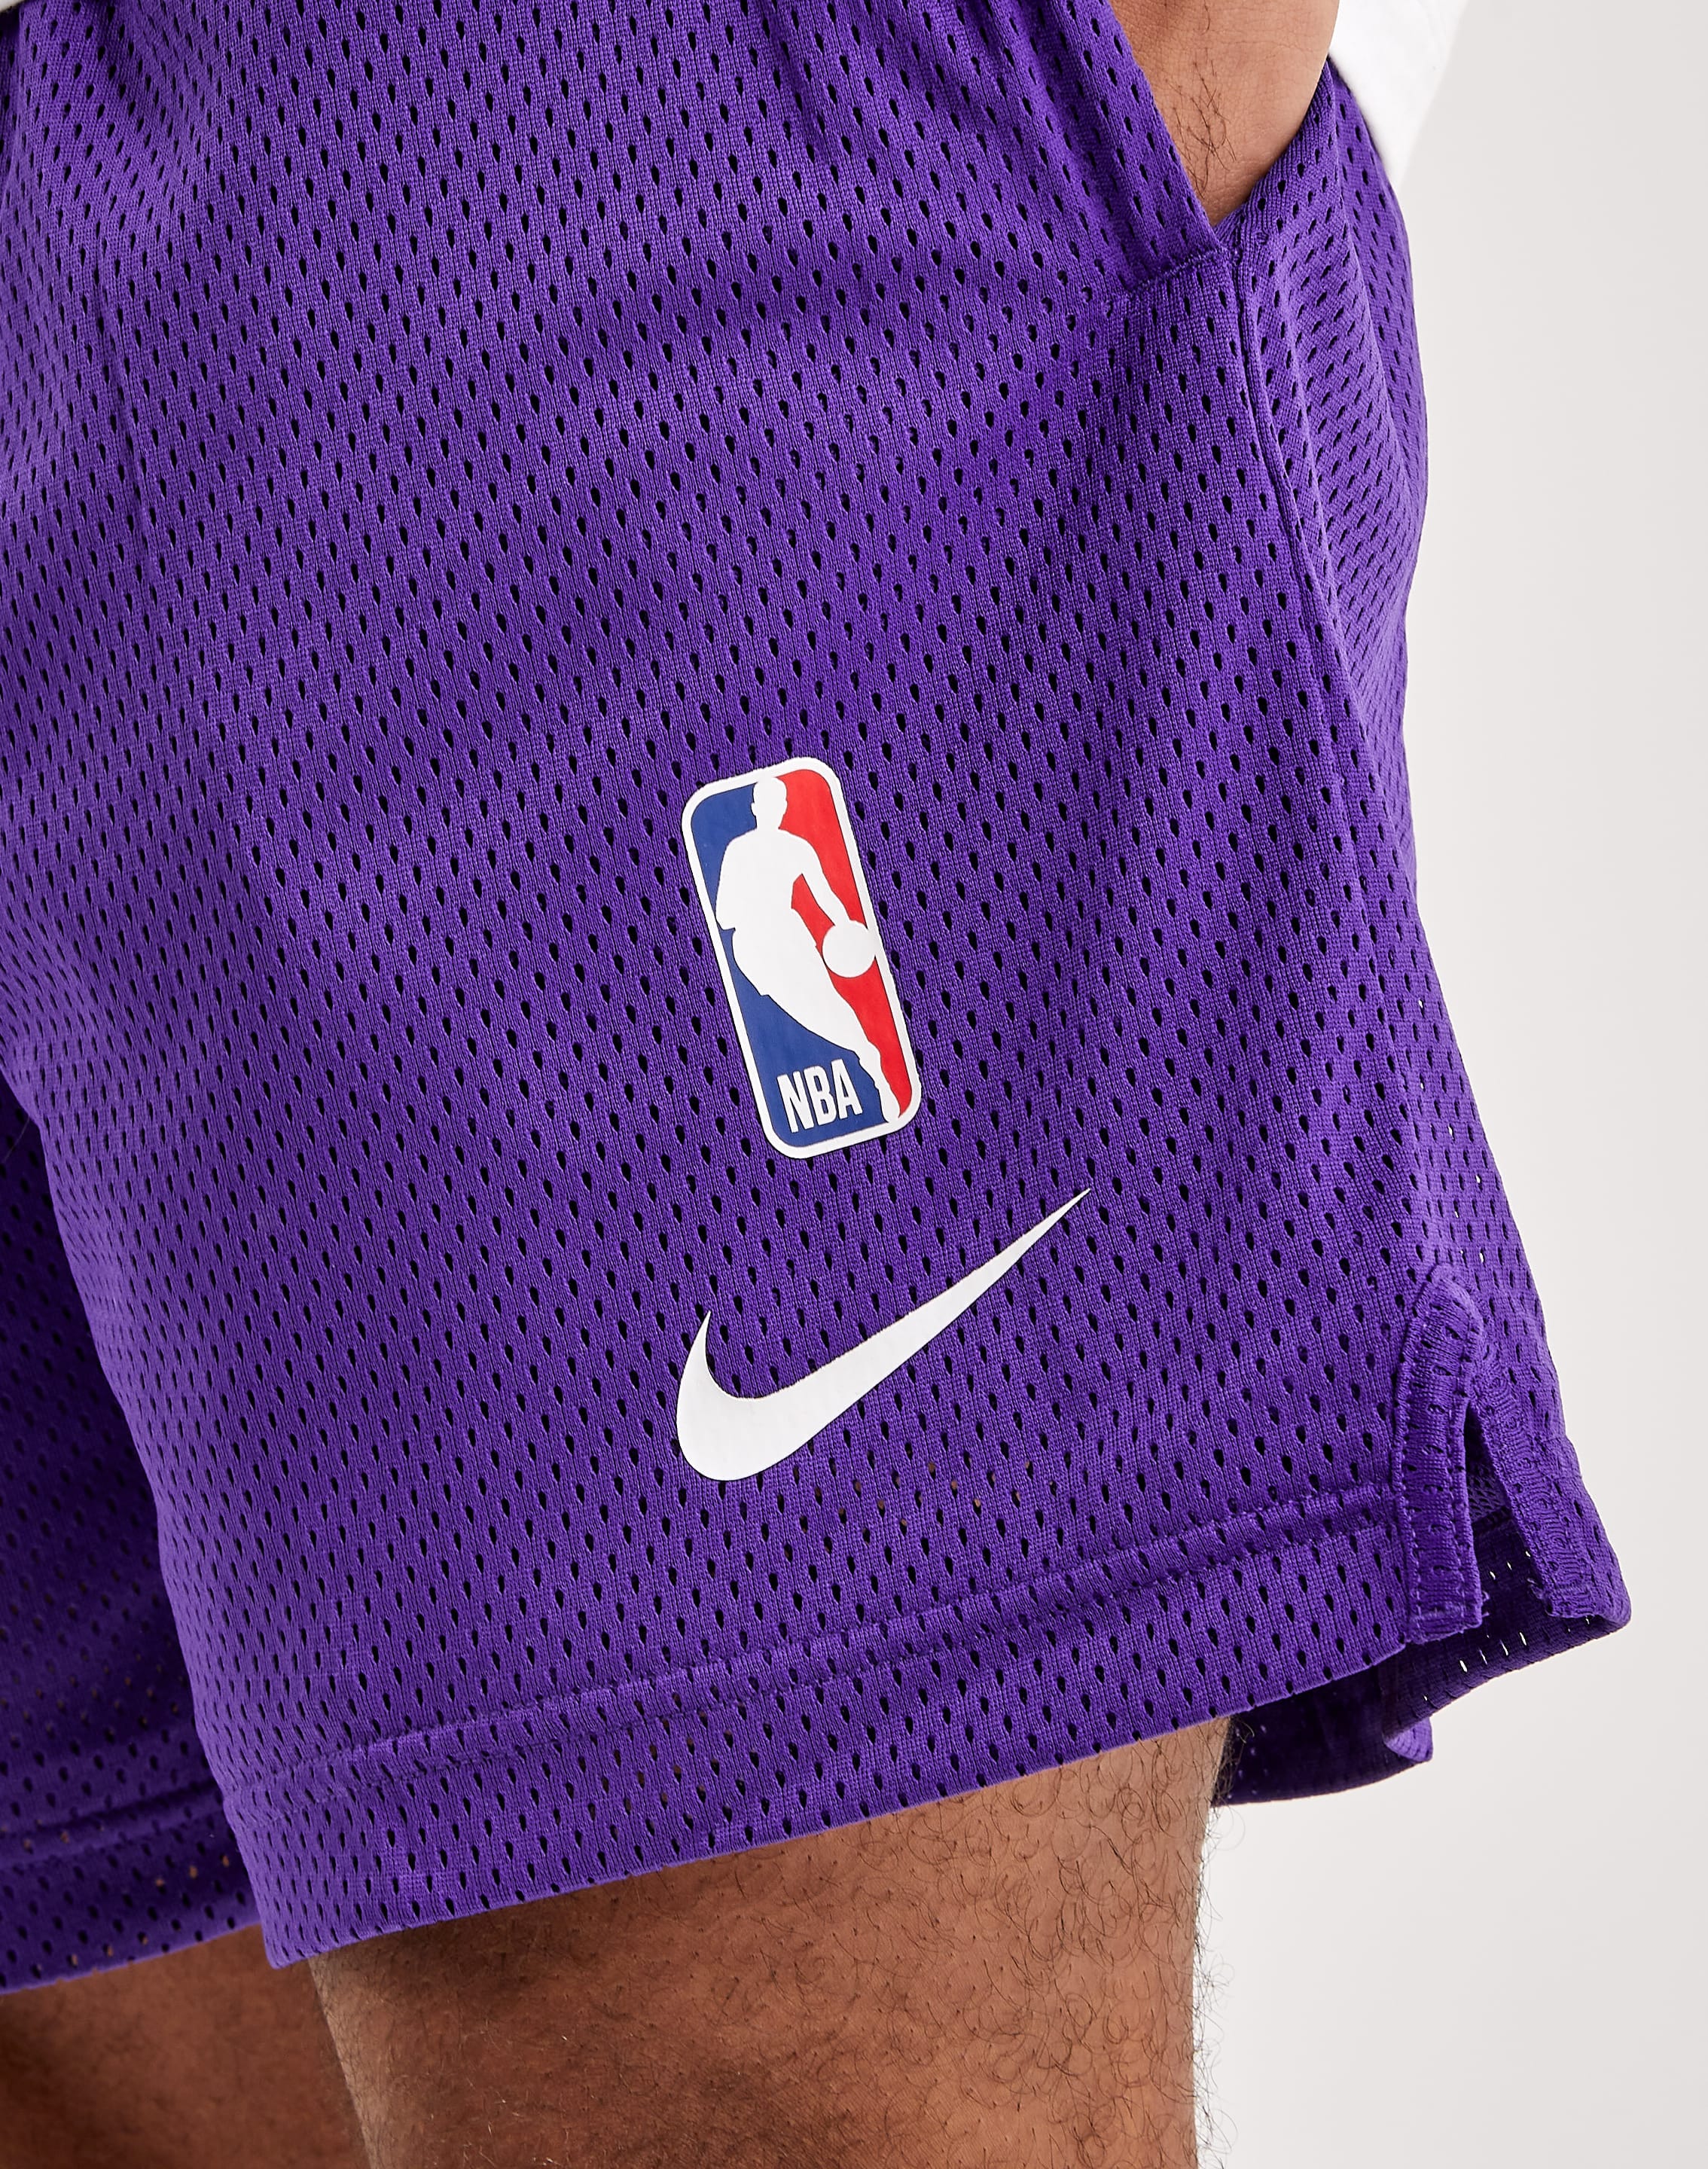 NIKE Los Angeles Lakers DNA Dri-FIT NBA Shorts DH9175 504 - Shiekh